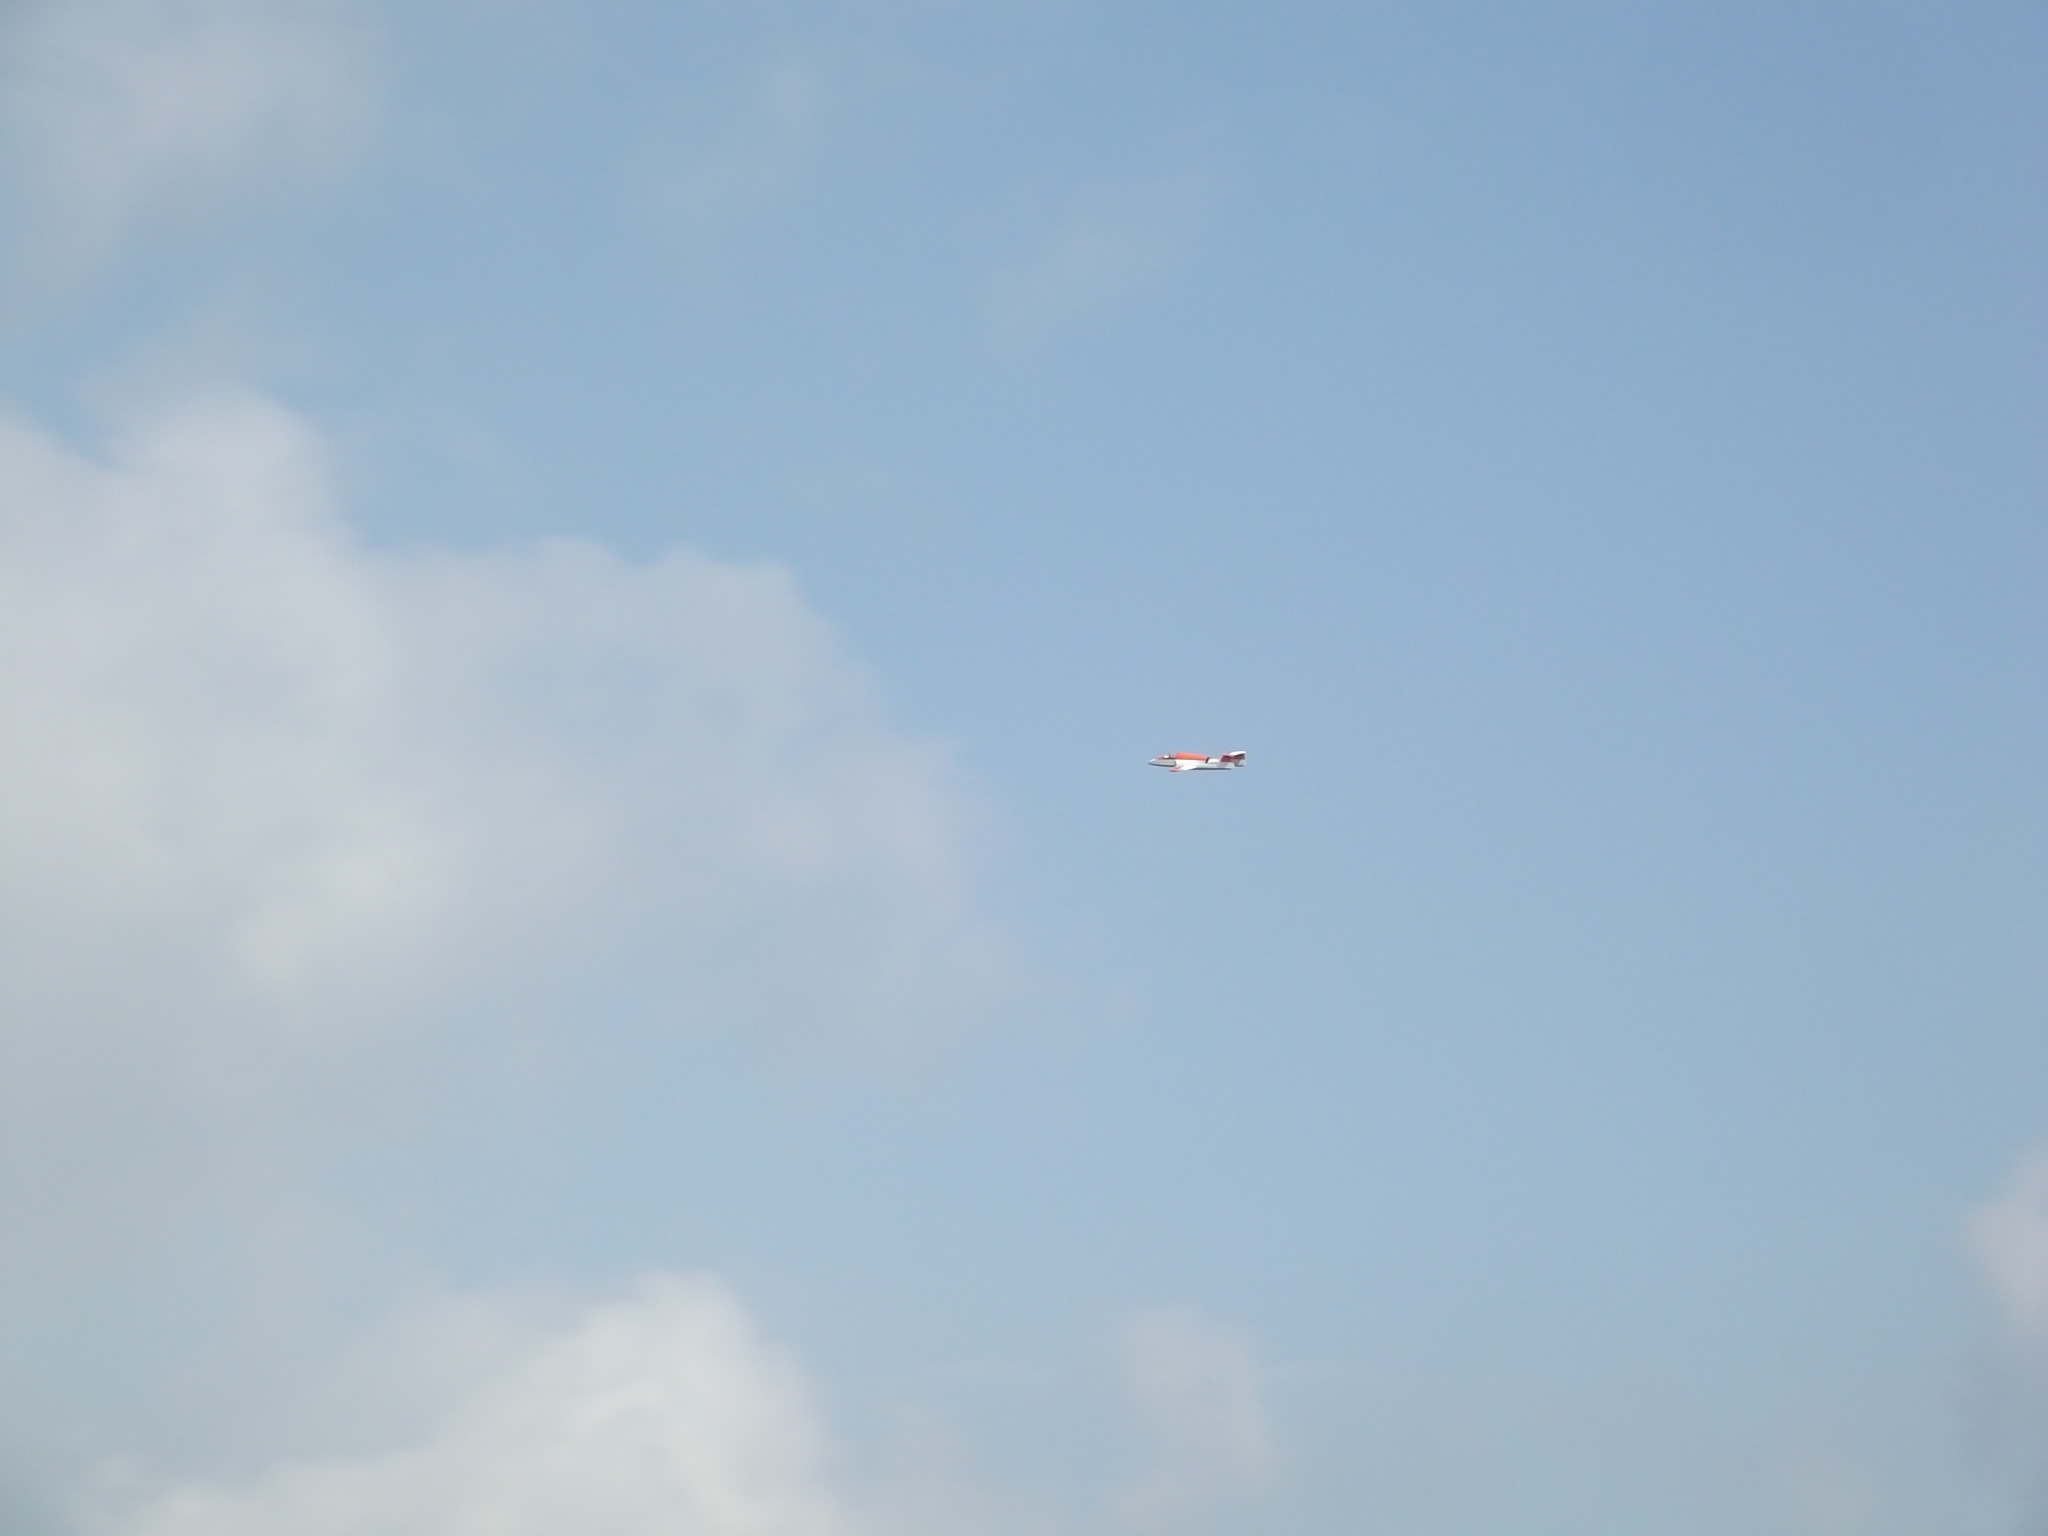 Jet-Flugtage in Ganderkesee - Der erste Düsenjäger am Himmel - fast nicht abzulichten, so schnell fliegen die Modelle